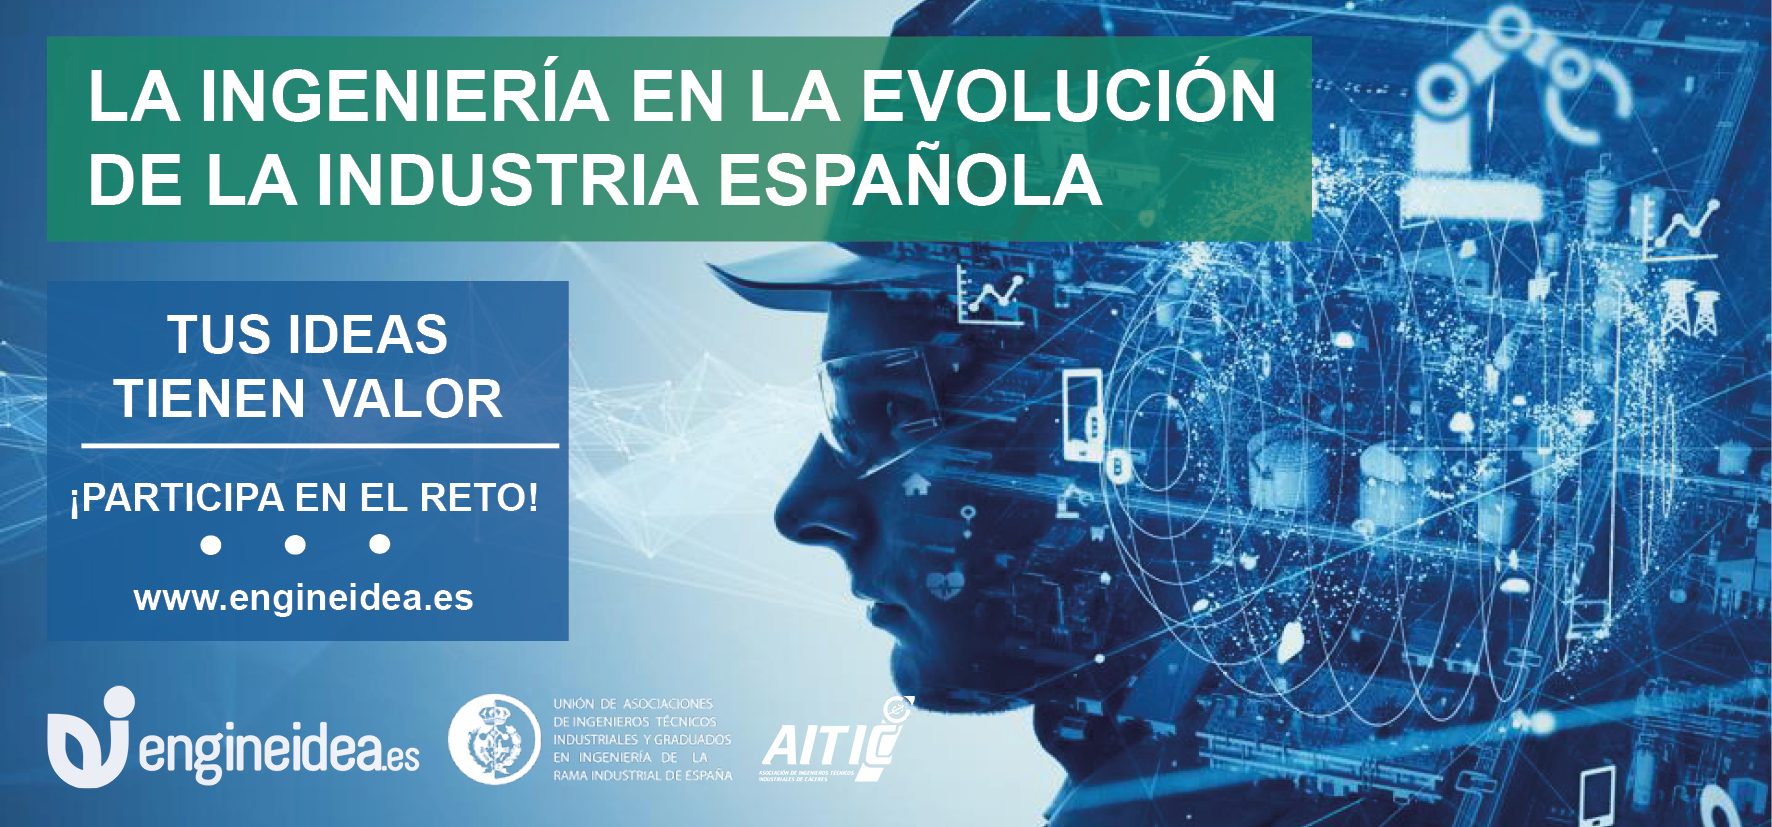 La Ingeniería en la evolución de la industria española